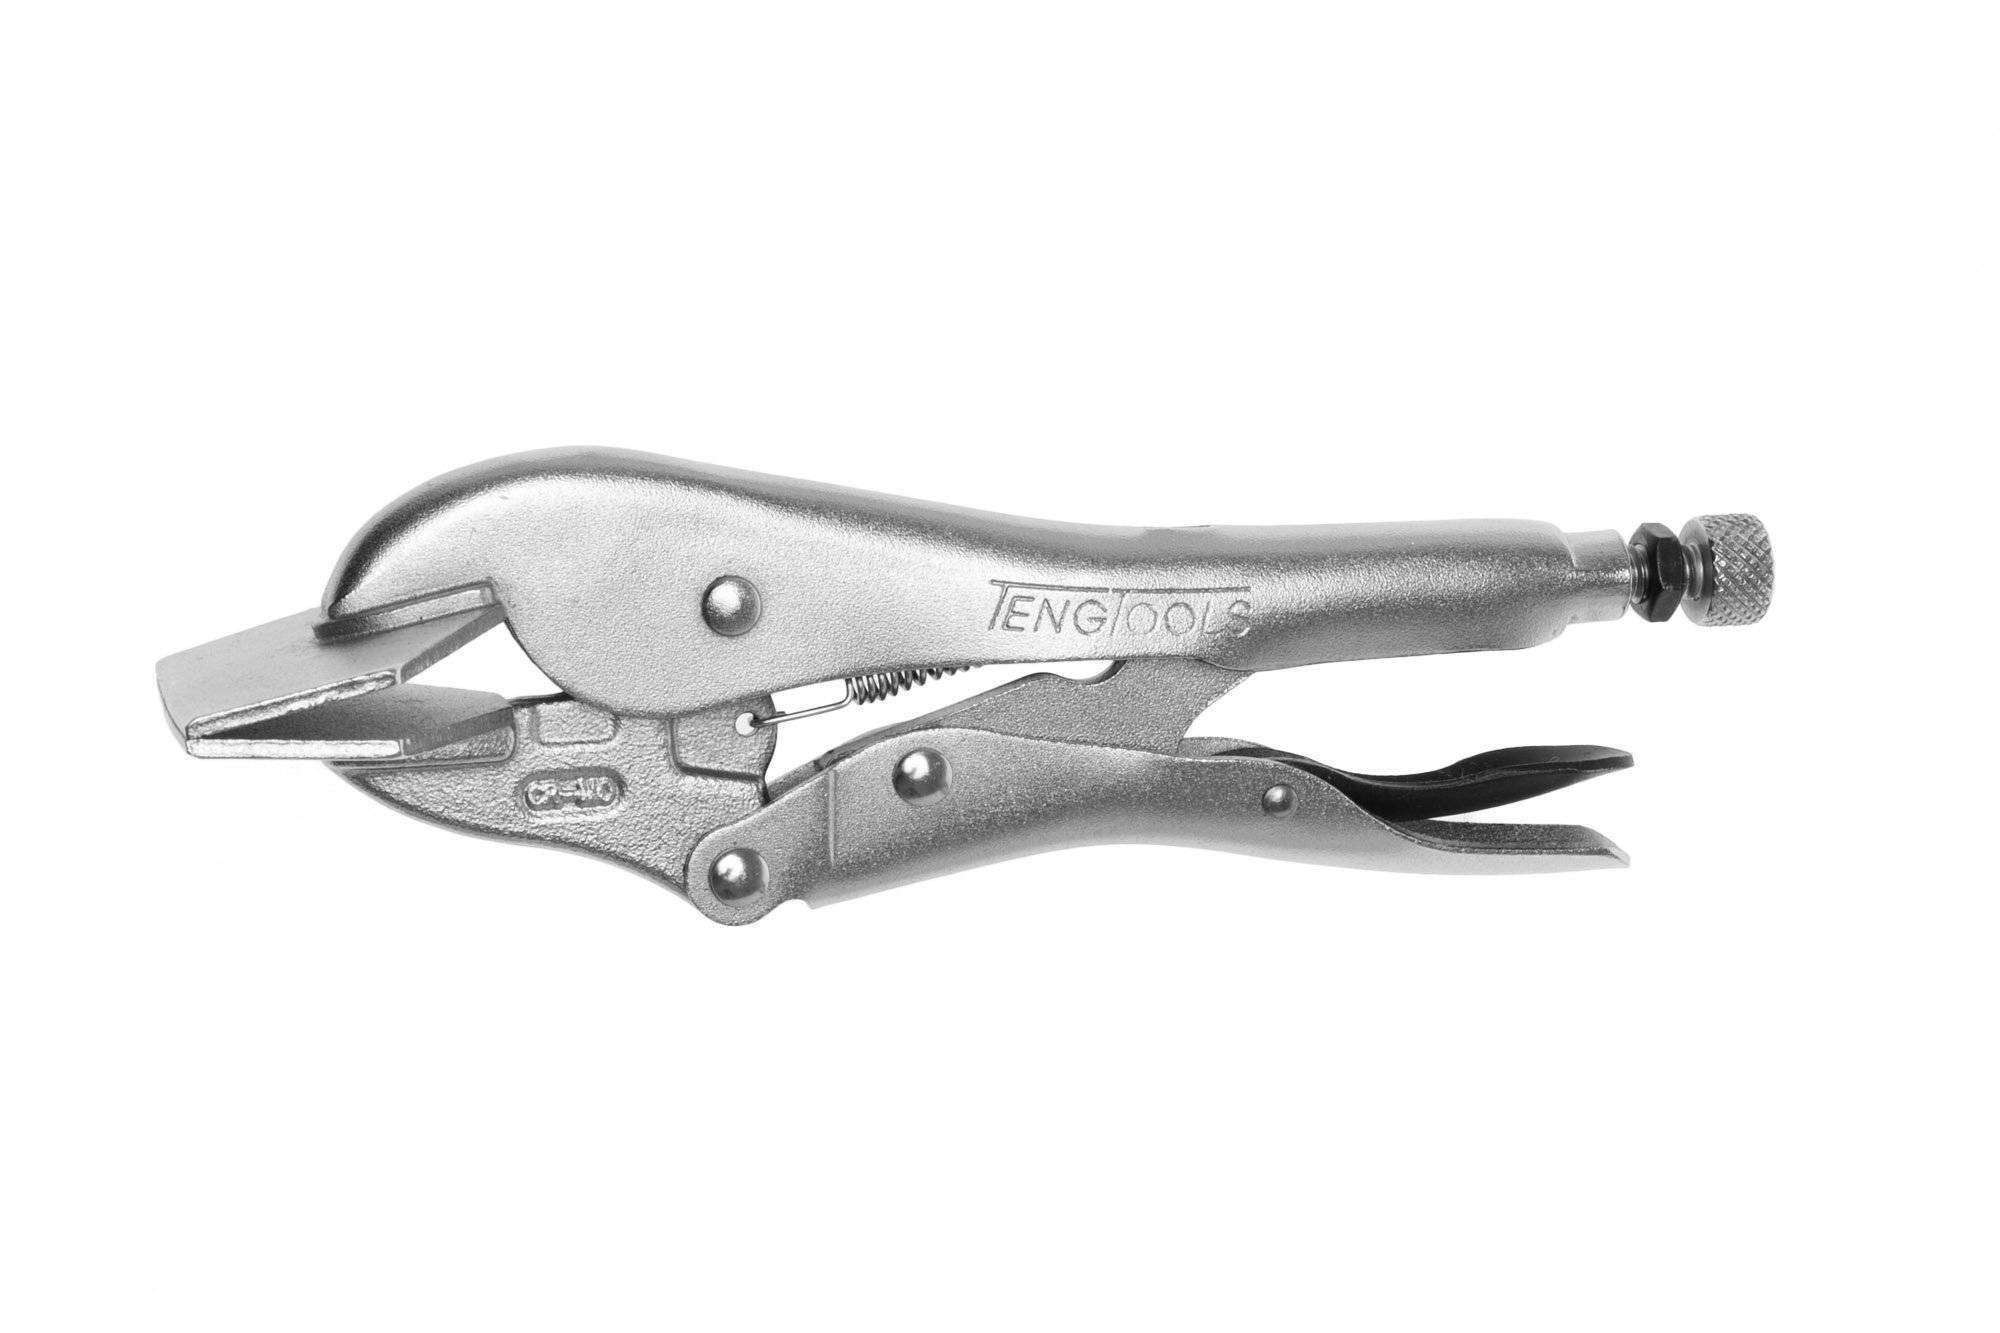 Teng Tools 8 Inch Sheet Metal Vise Grip Power Grip Locking Pliers/Tool - 408